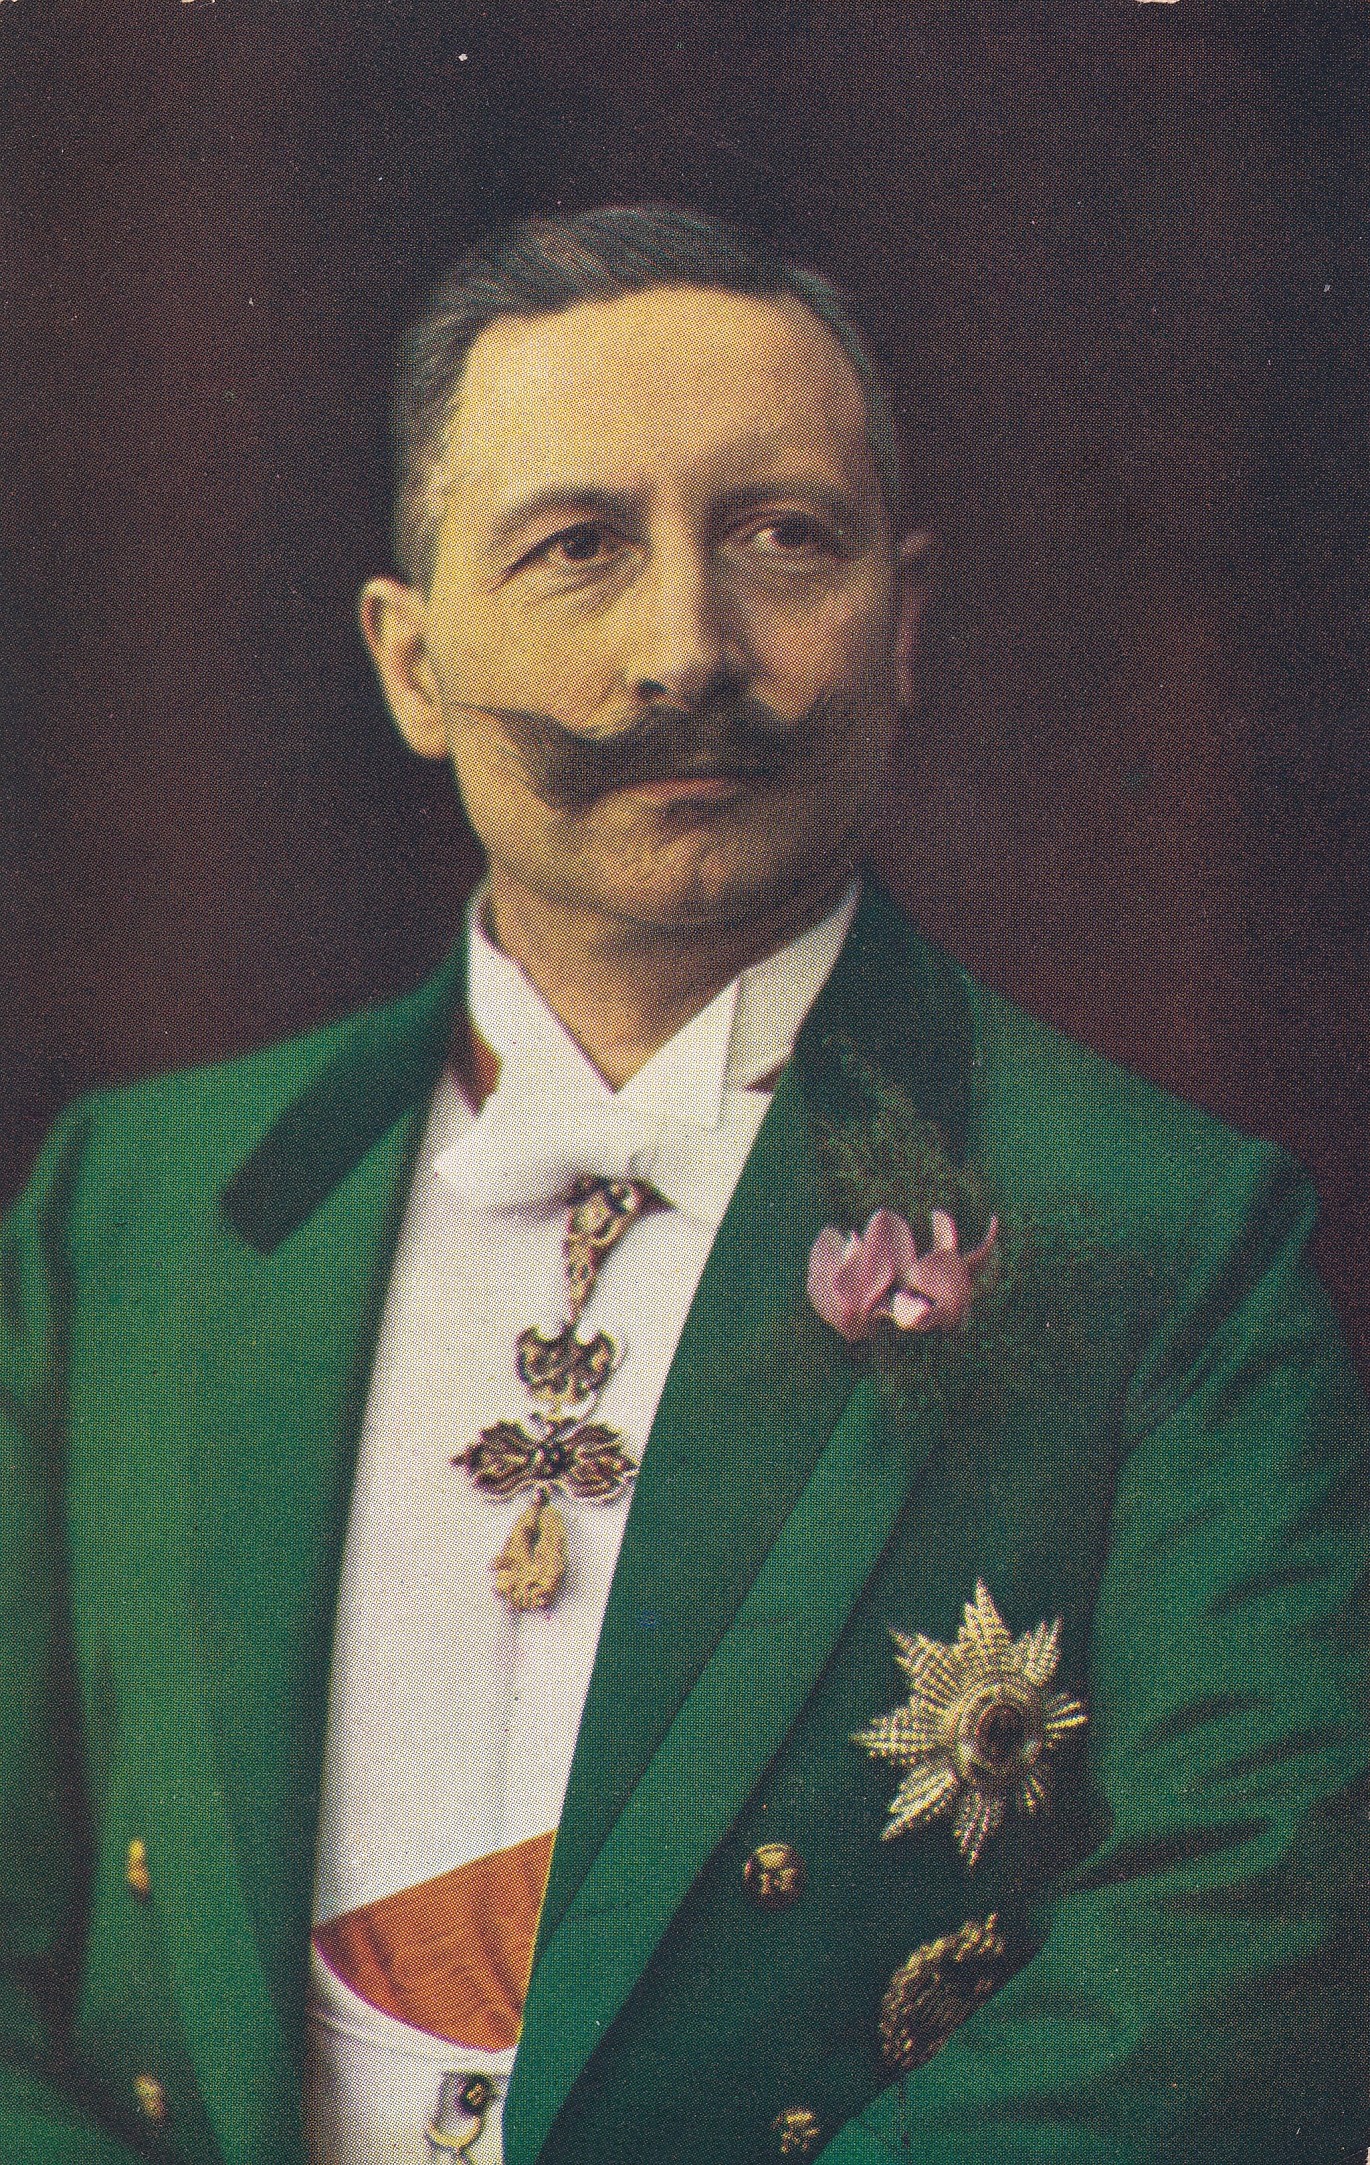 Bildpostkarte mit Porträt Kaiser Wilhelms II. (1859-1941) im grünen Frack als Dreifarbendruck, 1906 (Schloß Wernigerode GmbH RR-F)